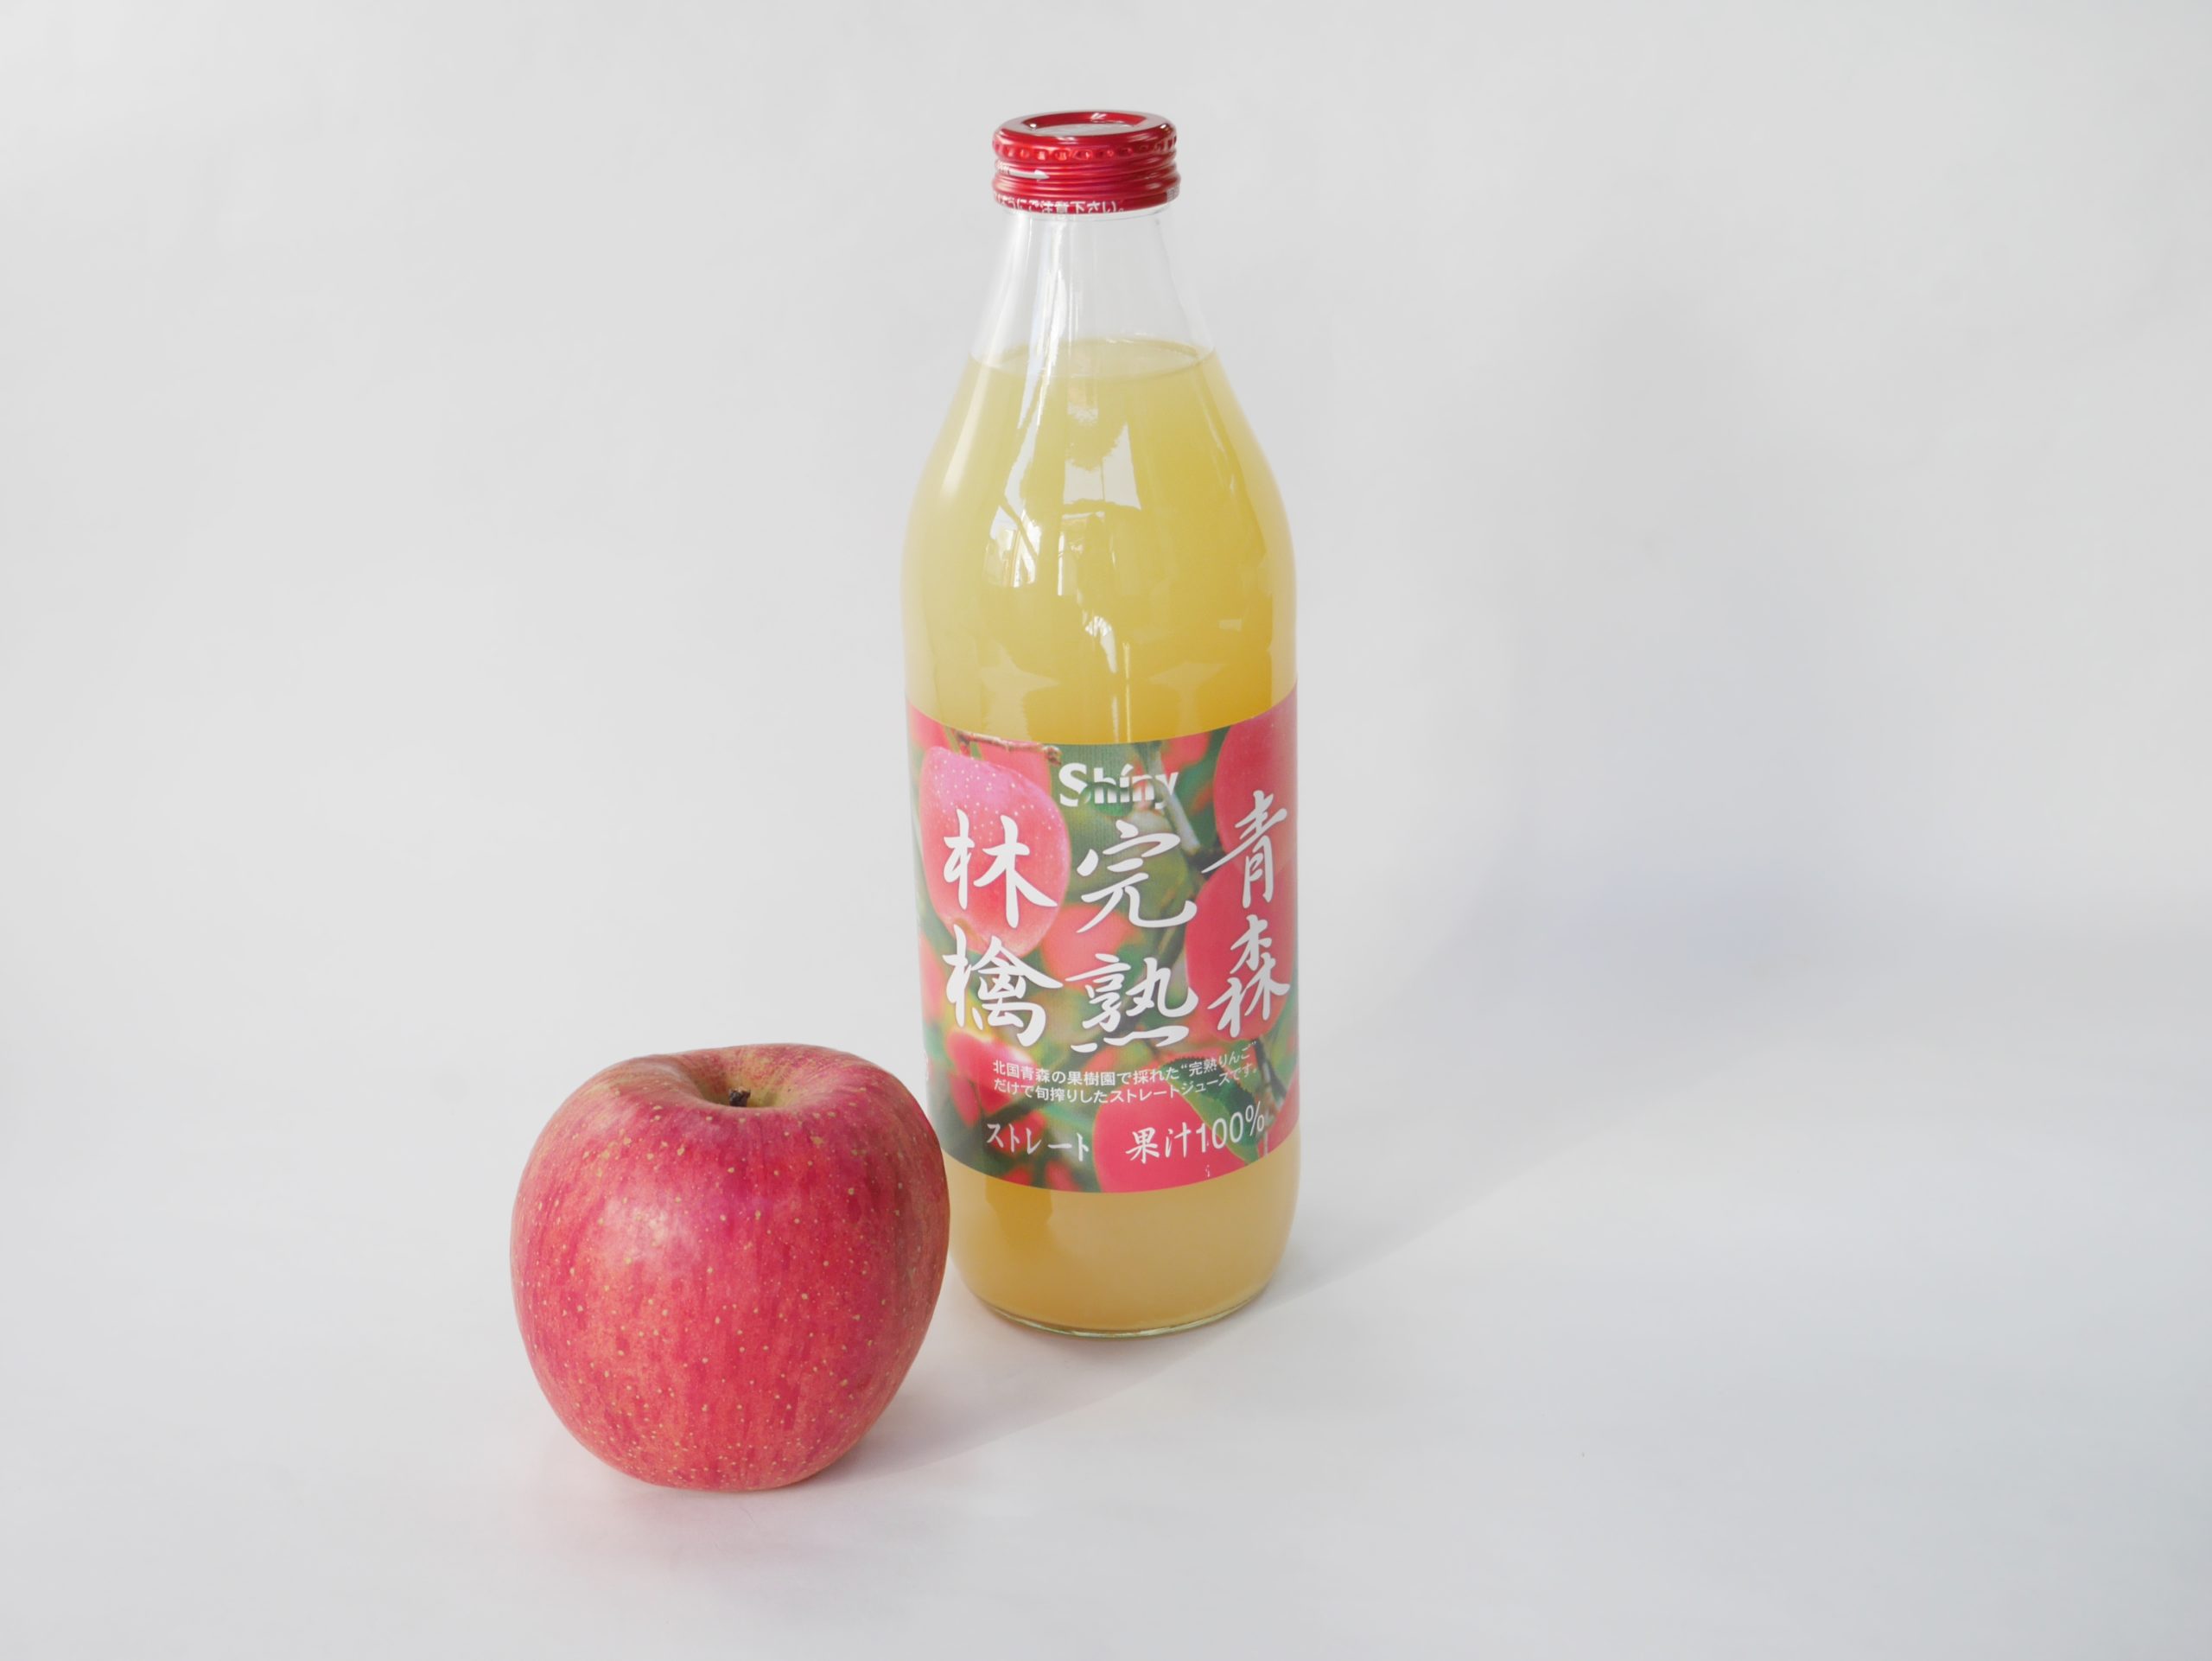 青森県産ストレートりんご果汁100% | 直売所天国